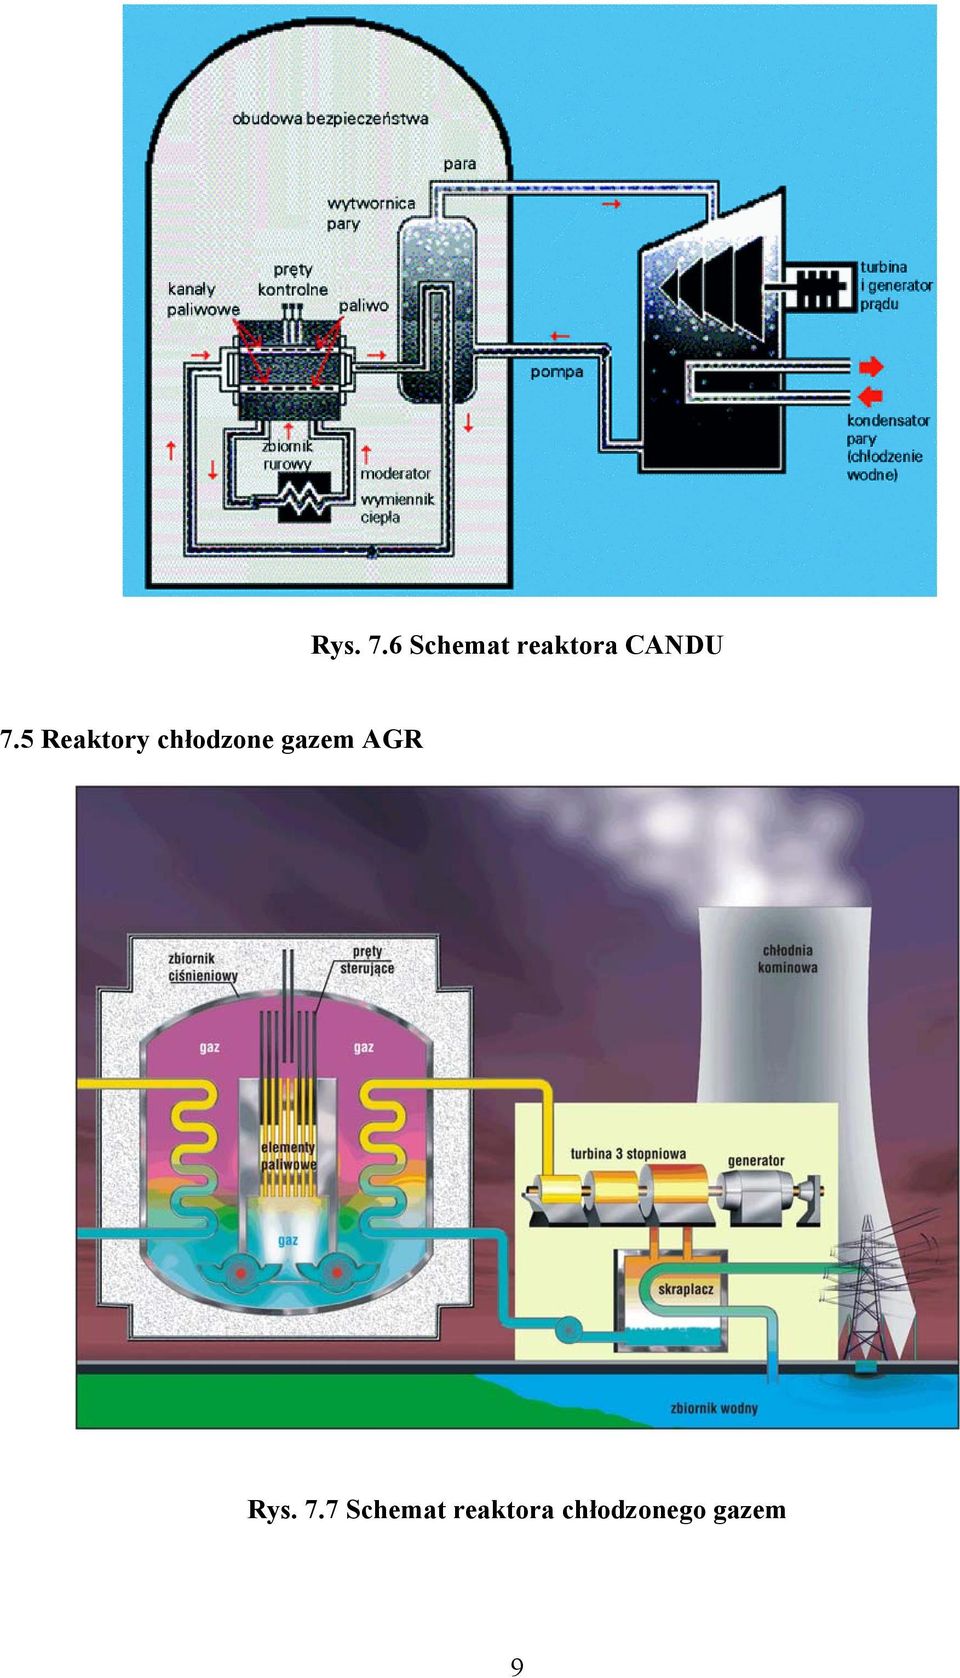 5 Reaktory chłodzone gazem